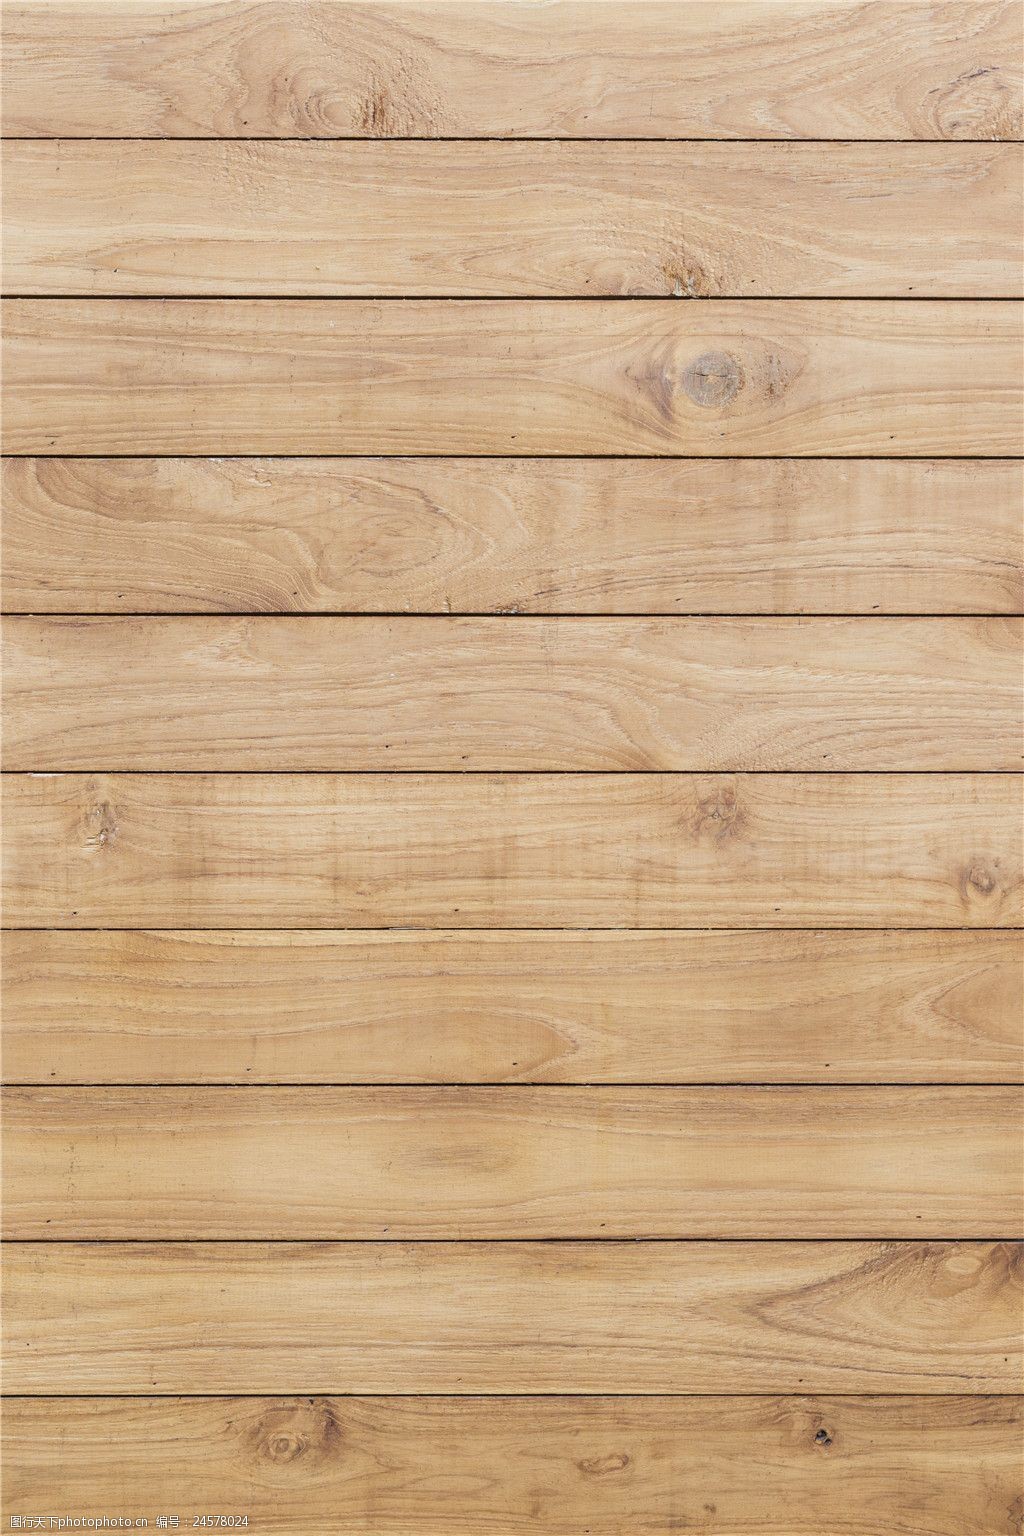 木纹木材 关键词:木板背景图 木纹 背景素材 jpg 材质贴图 高清木纹